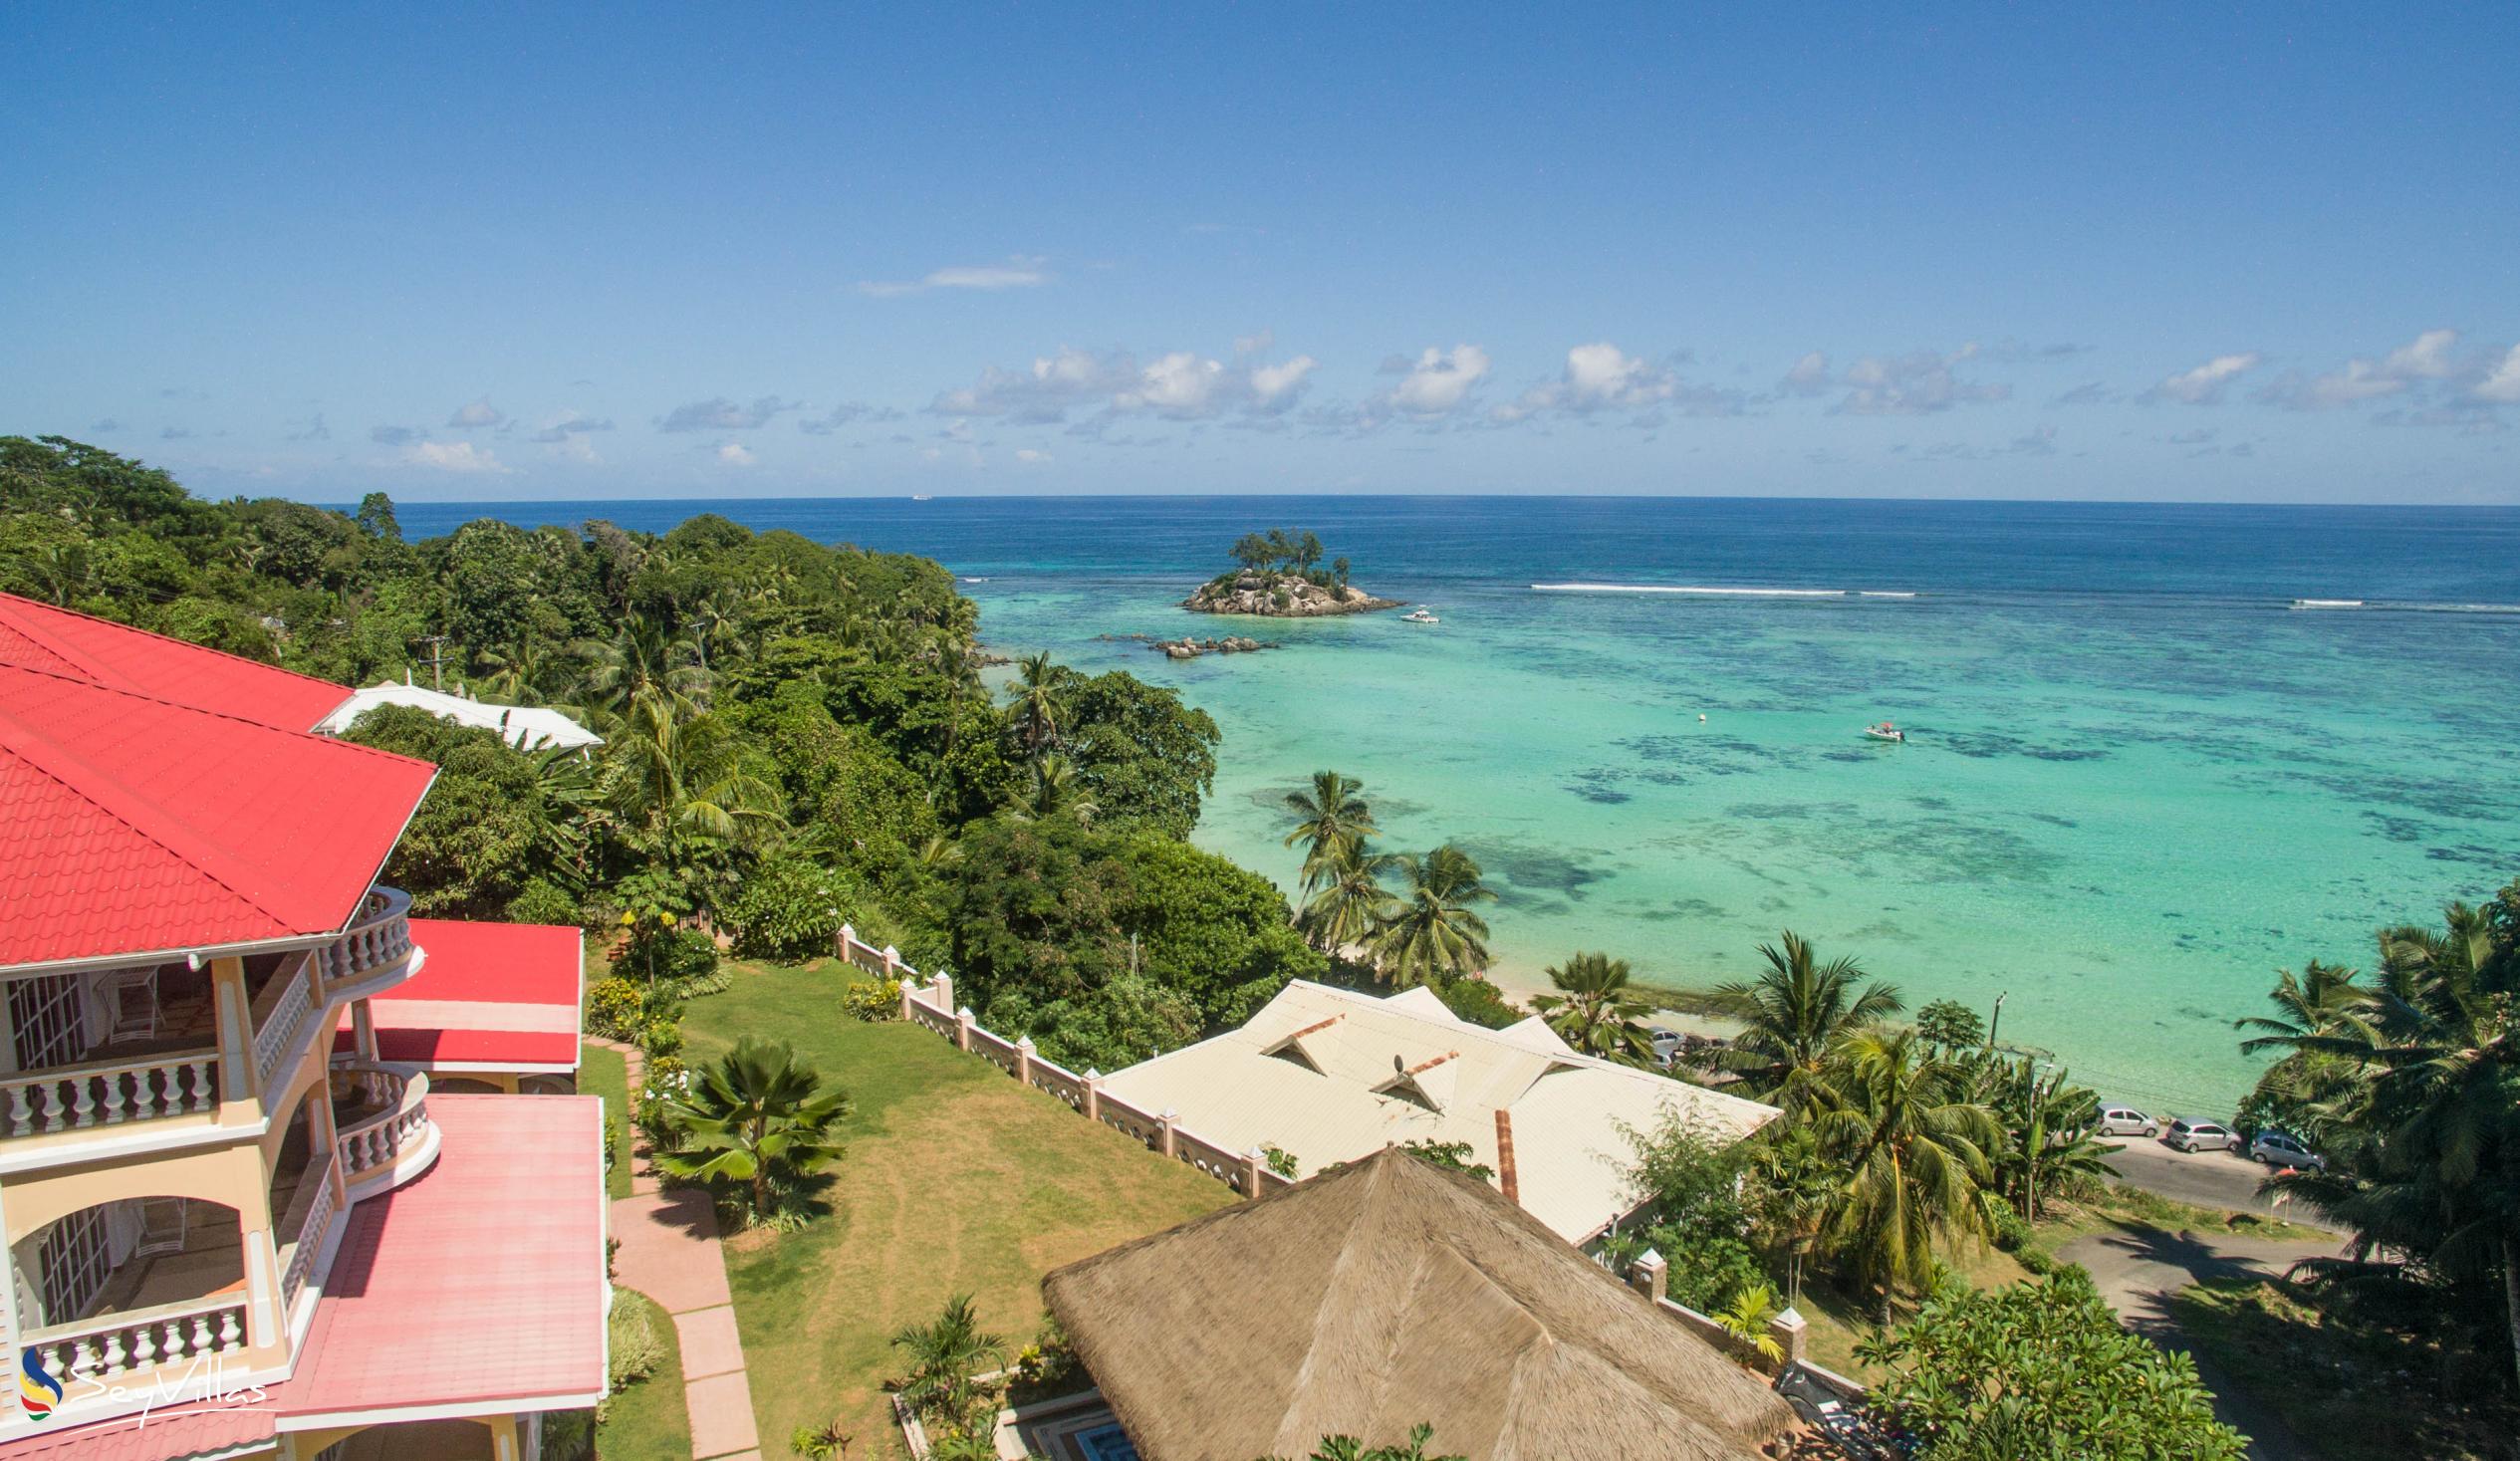 Photo 3: Au Fond de Mer View - Outdoor area - Mahé (Seychelles)